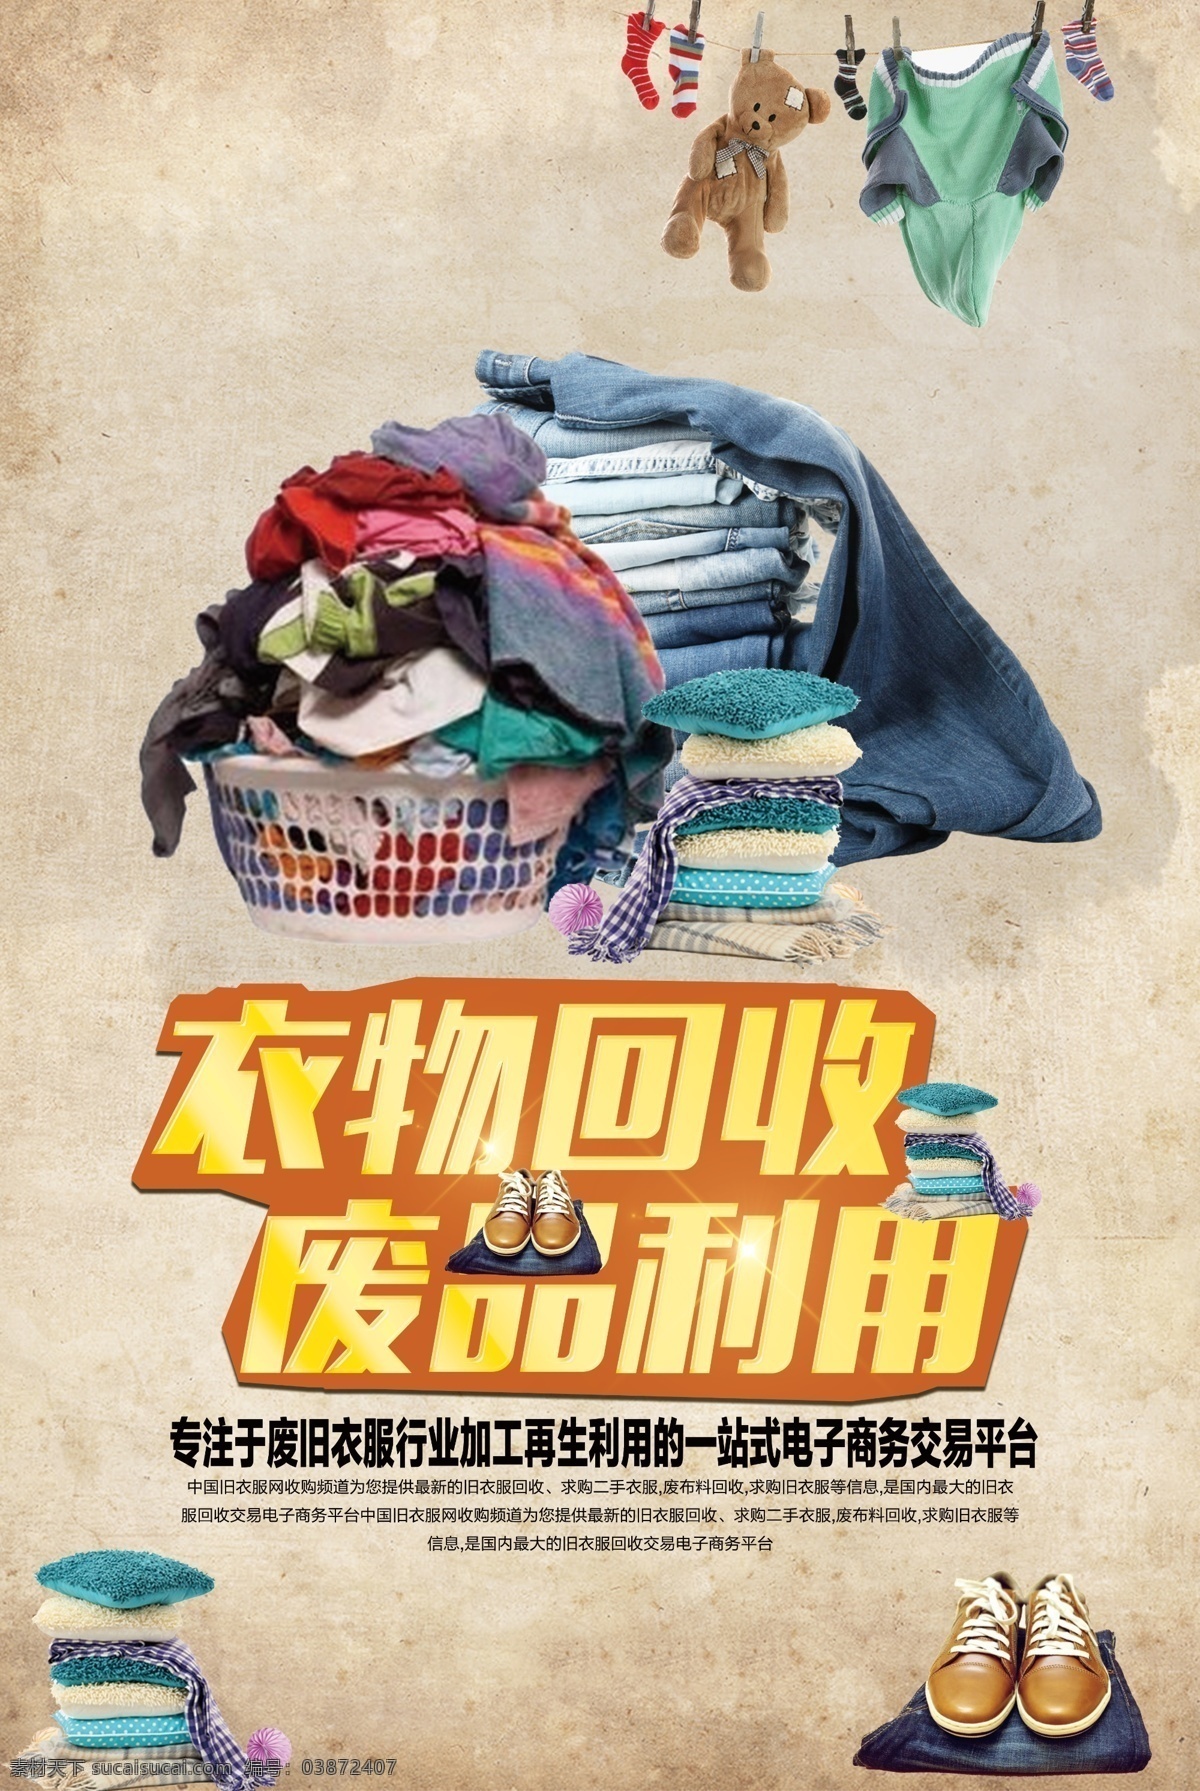 衣物 回收 废品 利用 公益 宣传海报 衣物回收 宣传 海报 社会